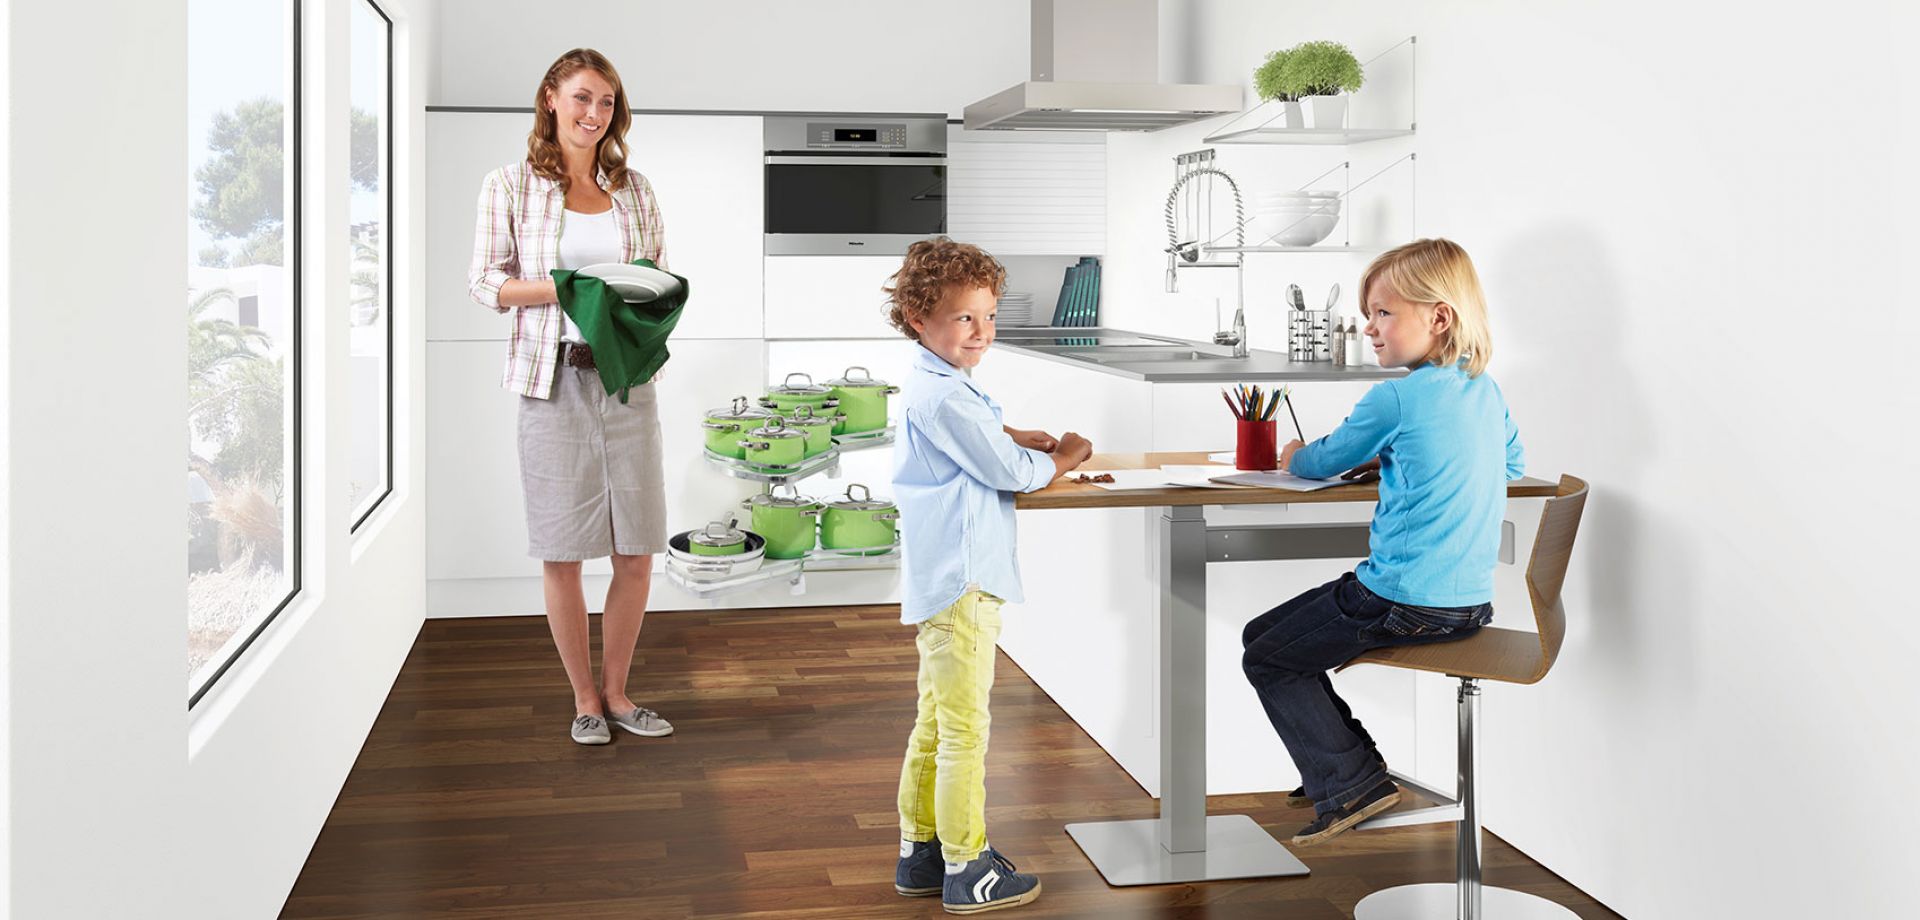 Rozwiązanie ergoAGENTmono może służyć także jako barek śniadaniowy w niedużych kuchniach lub być biurkiem dostosowanym do wzrostu dzieci, które potrzebują miejsca na odrabianie lekcji. Fot. Peka